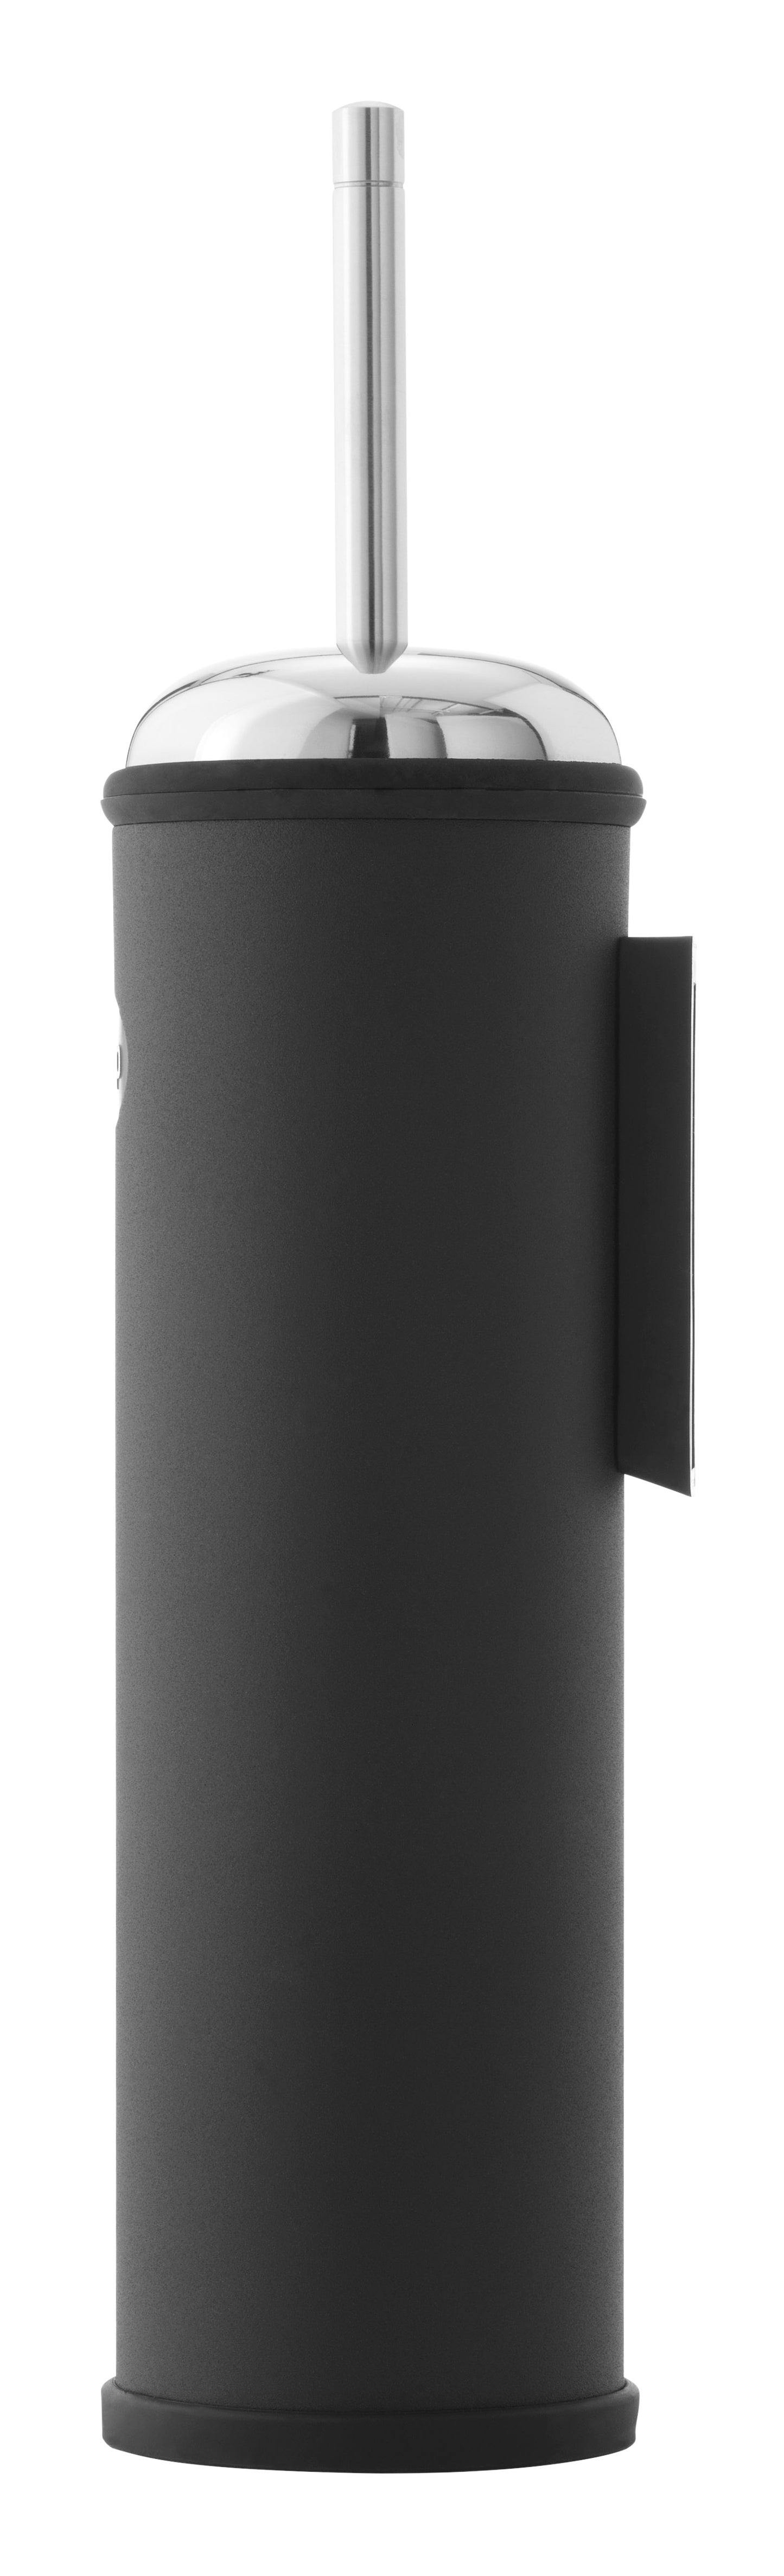 Vipp WC-Bürste für Wandbefestigung, schwarz